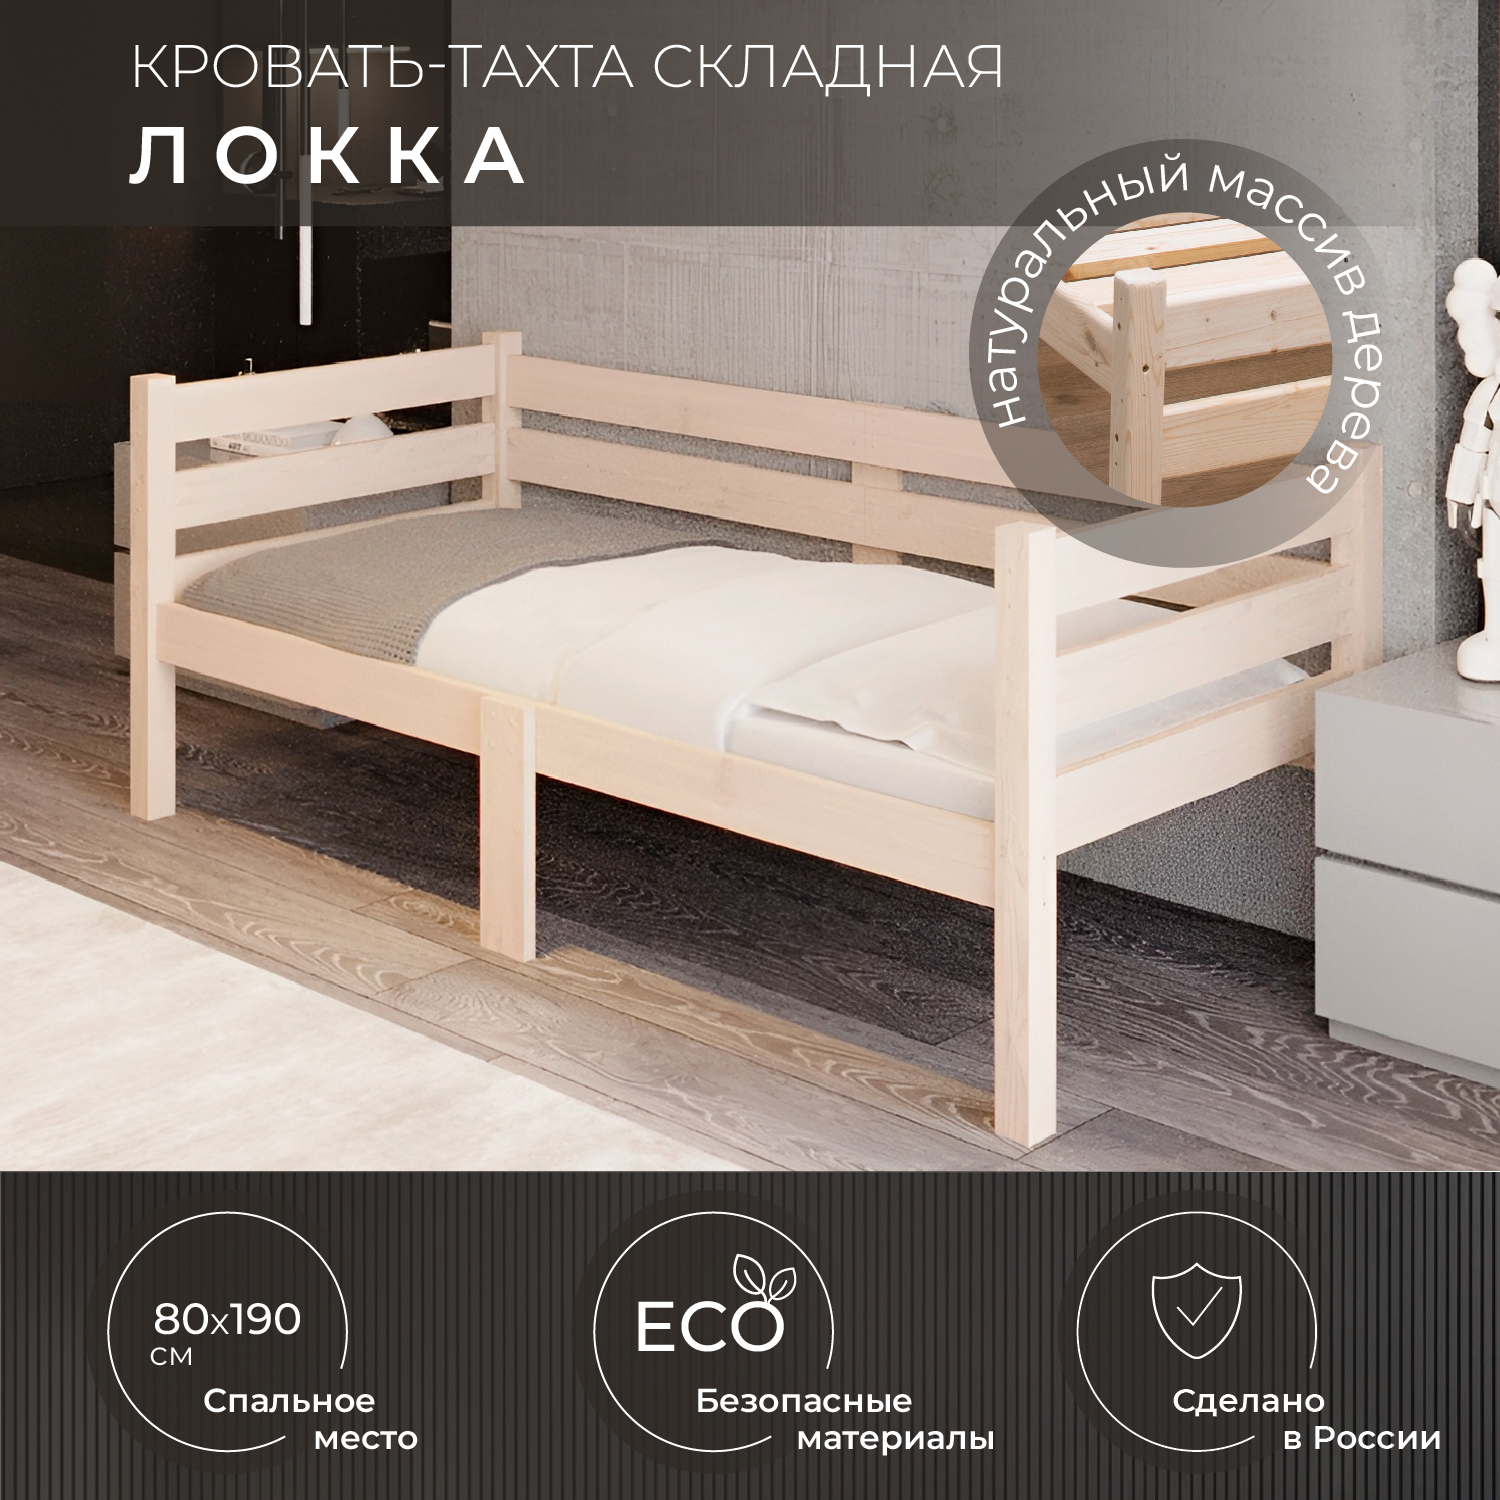 Кровать односпальная Новирон Локка 80х190 см складная бежевый